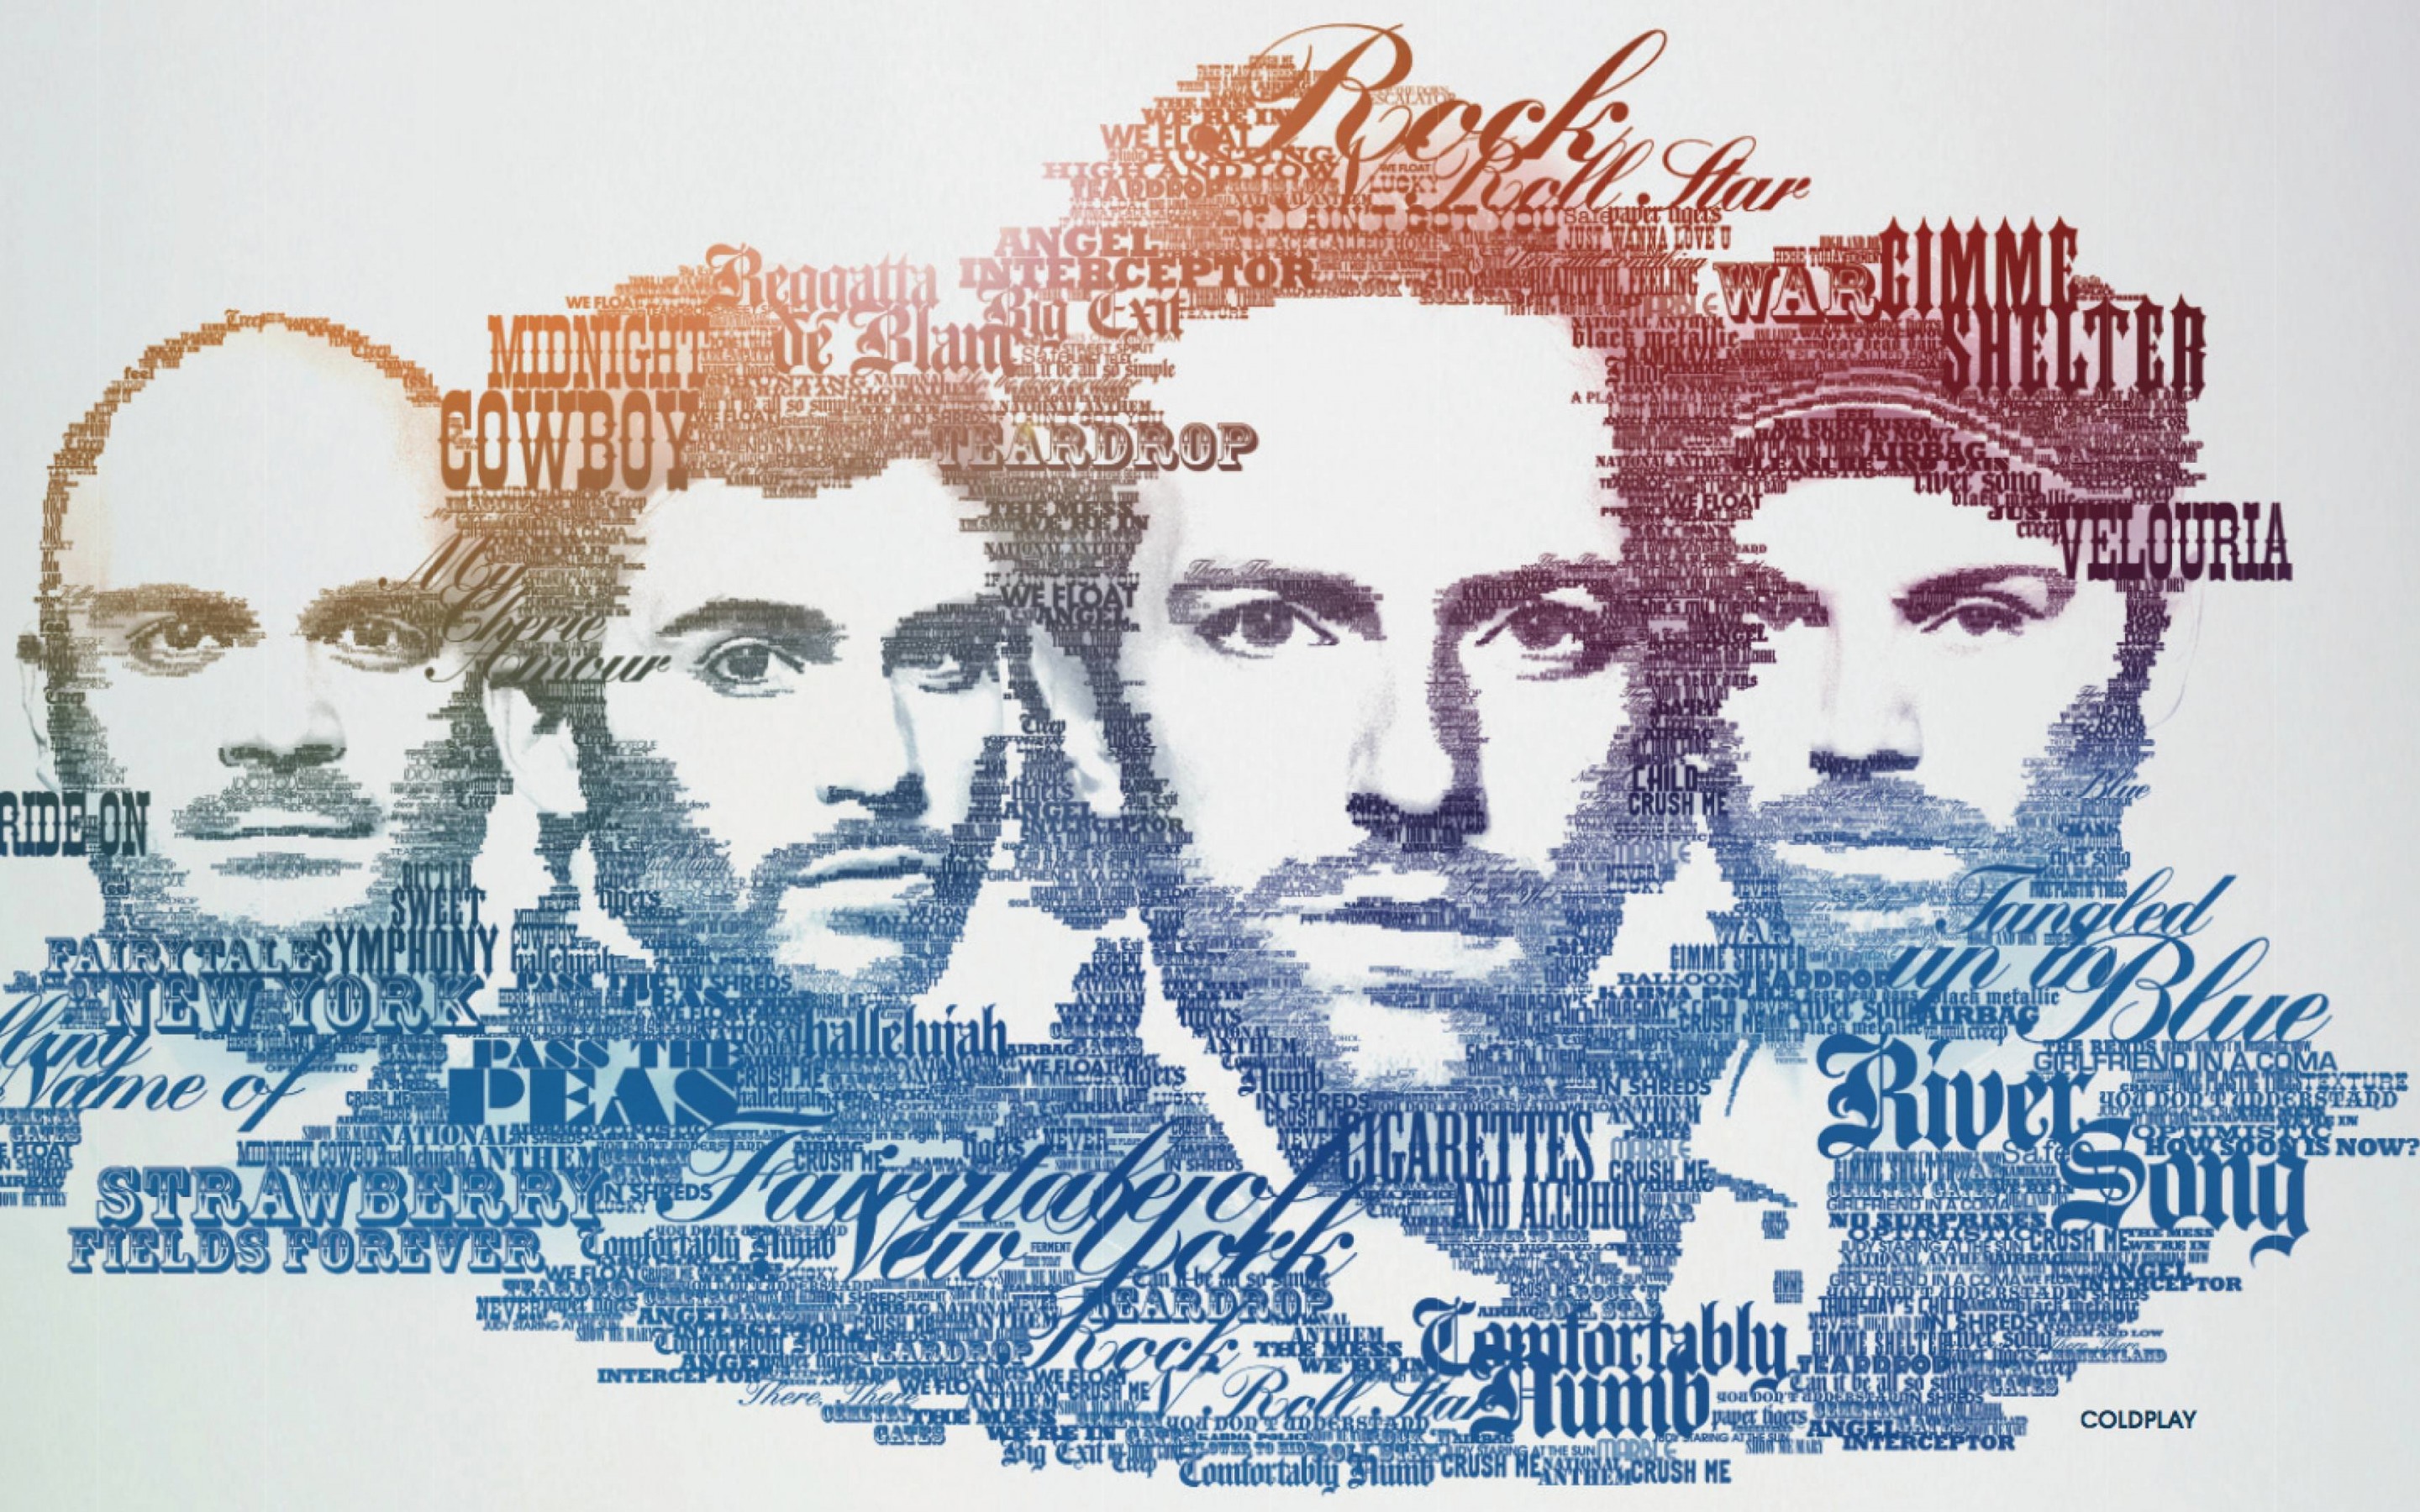 Coldplay Typographic Portrait Wallpaper for Desktop 2880x1800